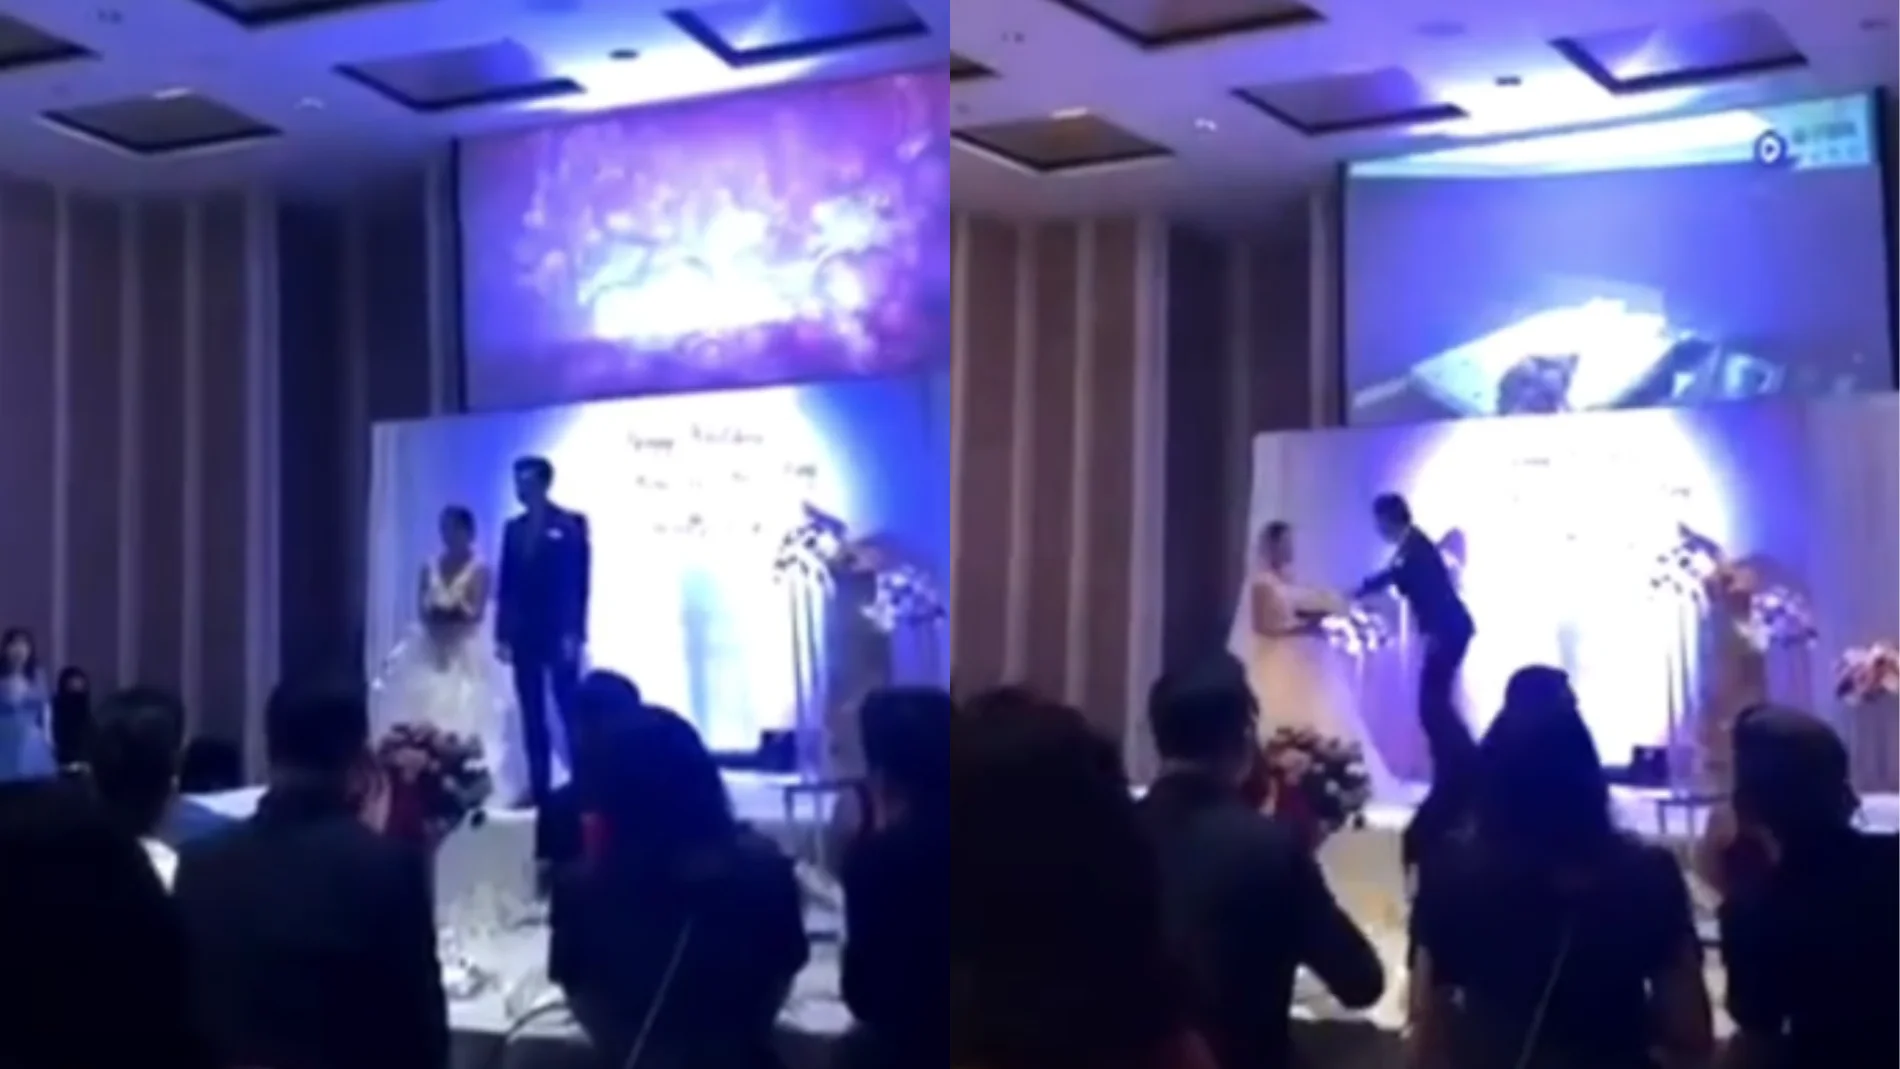 Imagen del altercado en la boda en China.